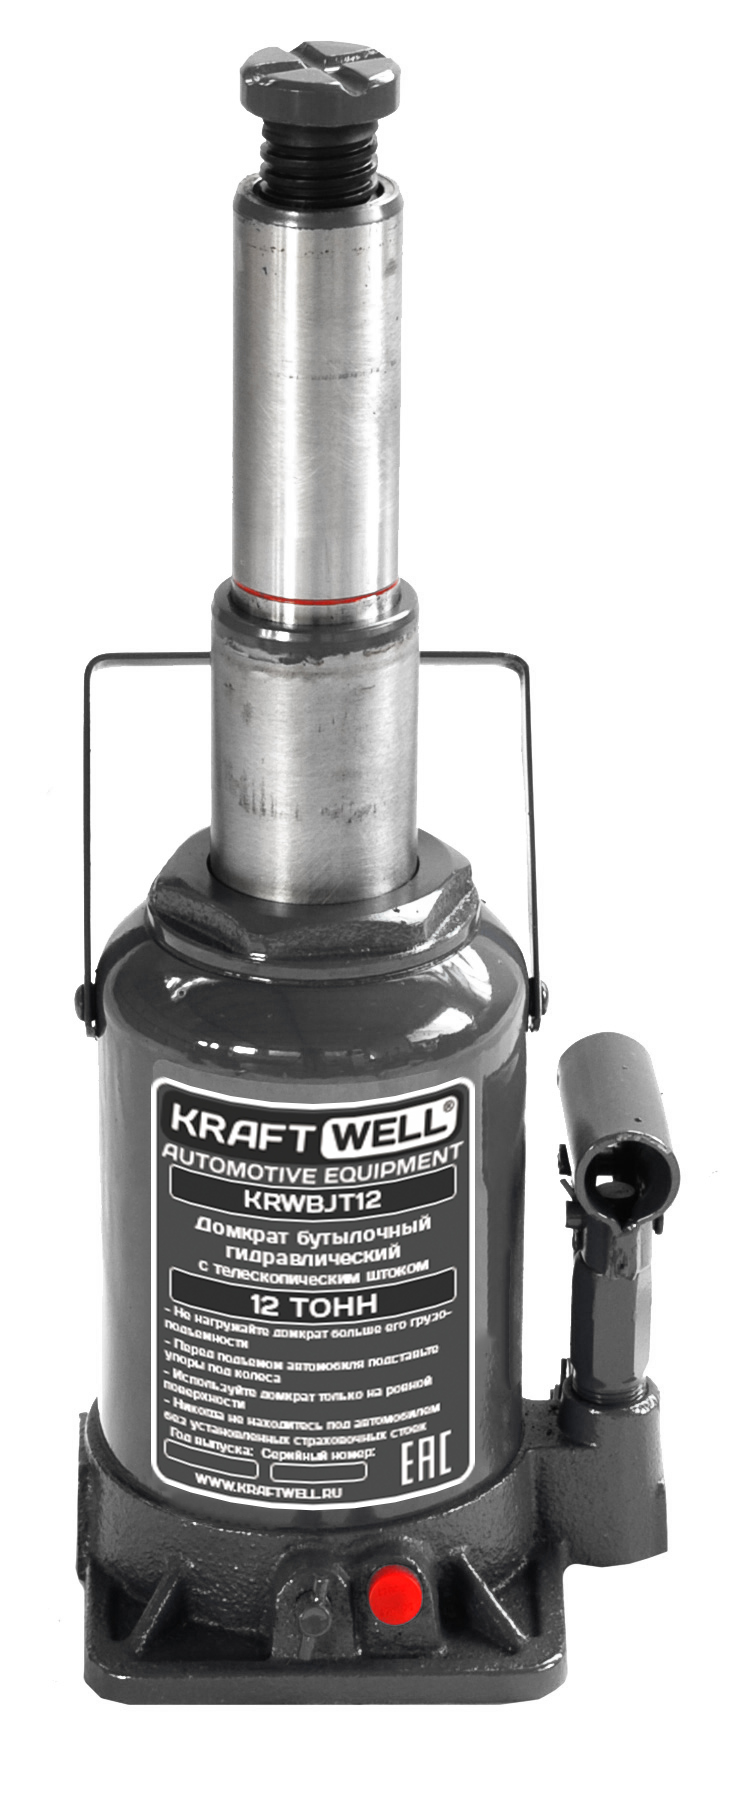 KraftWell KRWBJT12 Домкрат бутылочный г/п 12000 кг, с телескопическим штоком